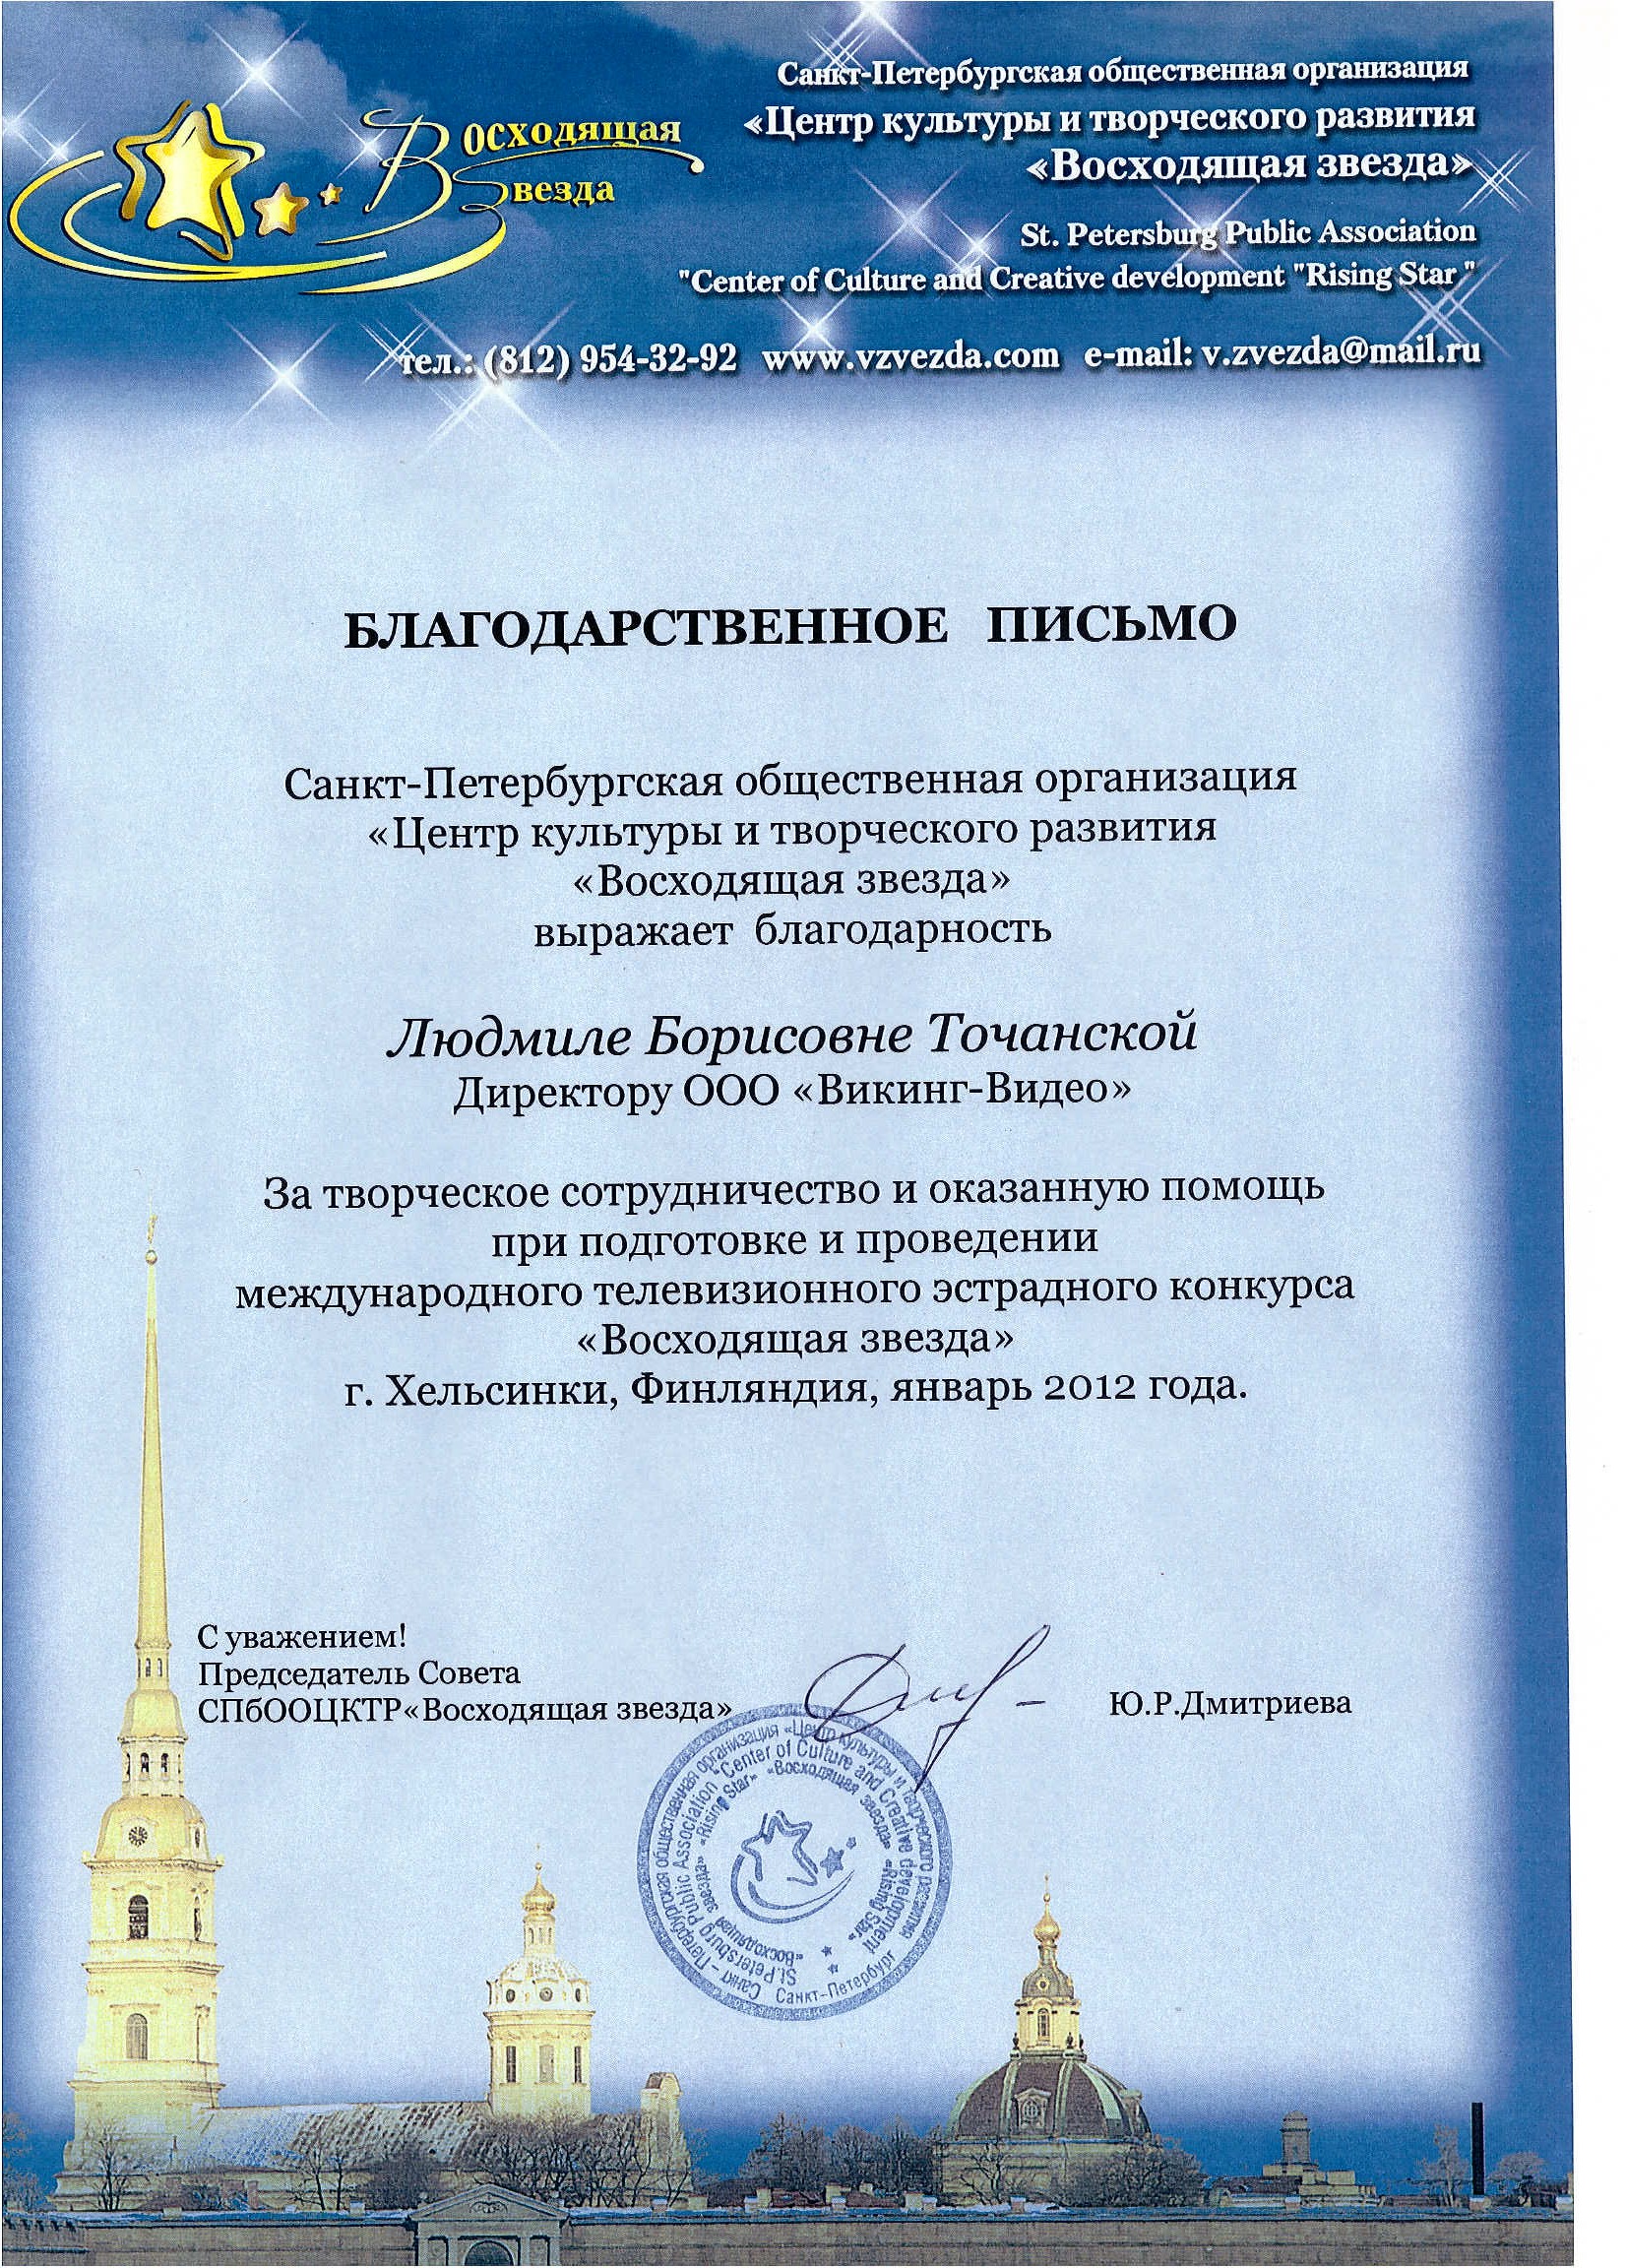 Благодарственное письмо от председателя совета СПБООЦКТР "Восходящая звезда". 2012 год